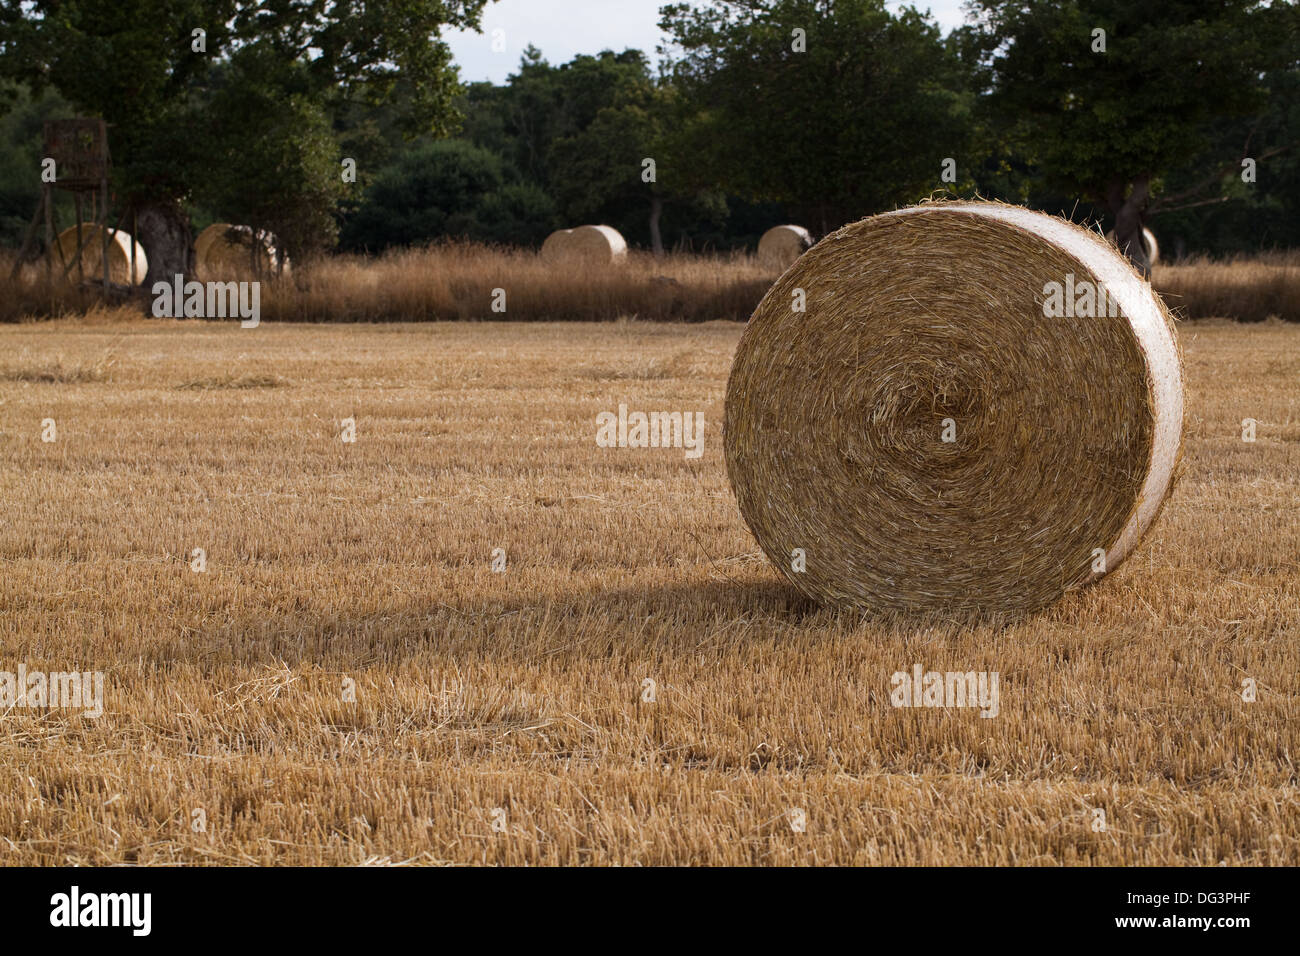 Runde, net gebunden und umwickelte Strohballen, links auf Stoppeln nach der Getreideernte versammelten sich in. Stockfoto